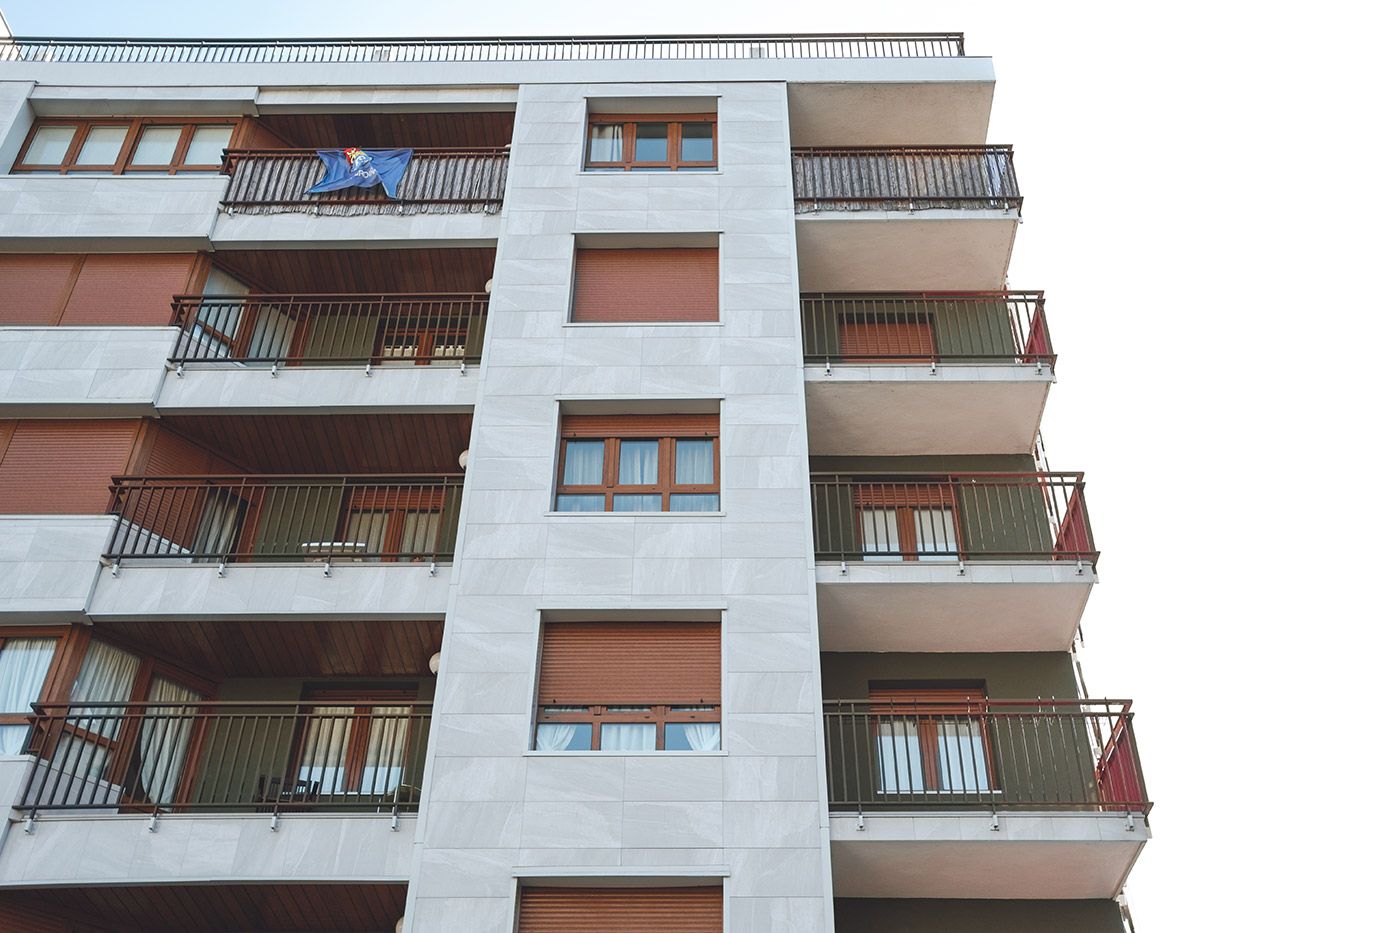 Reforma fachada ventilada balcones